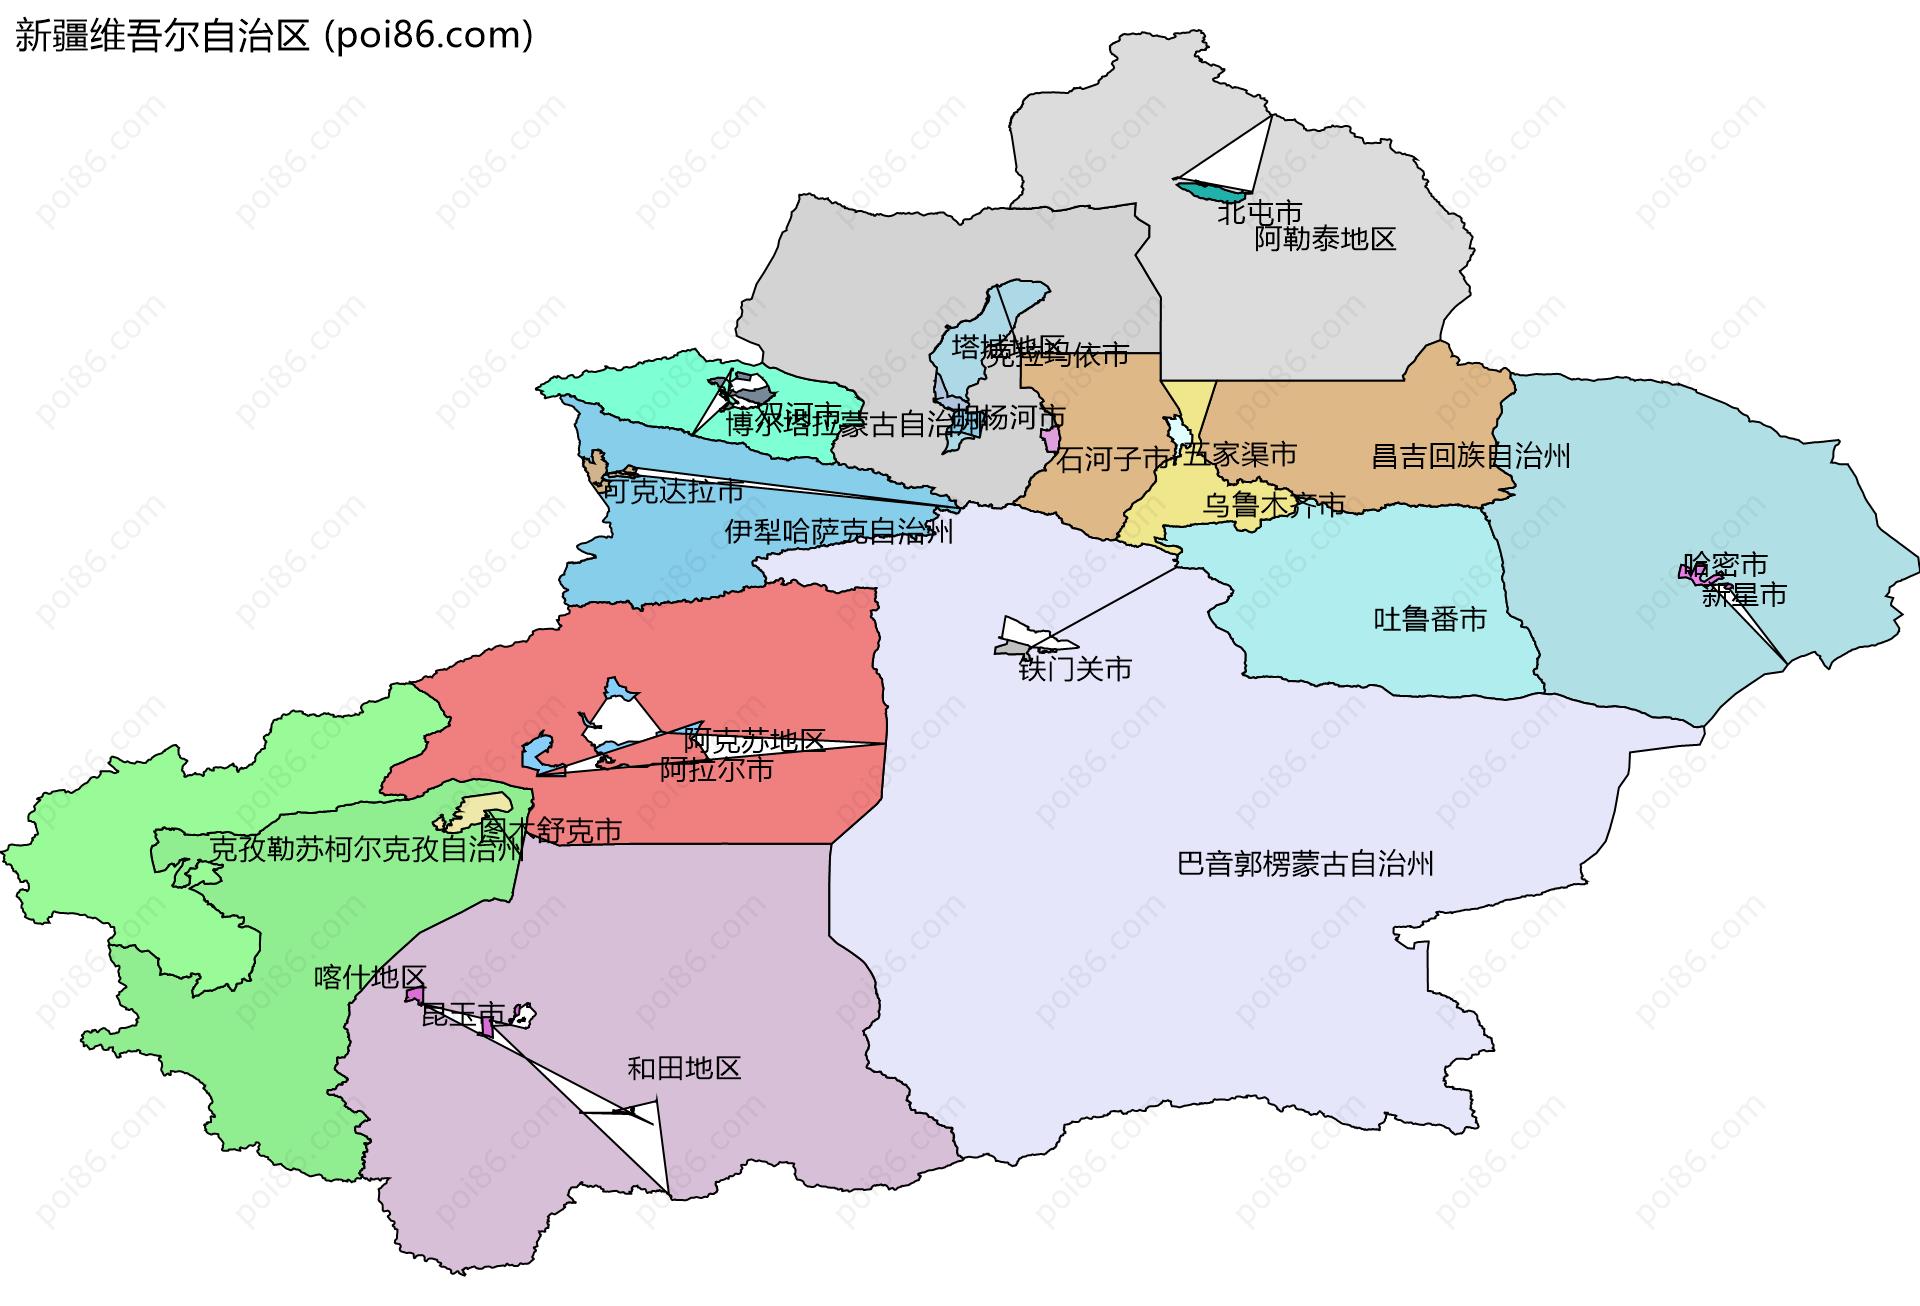 新疆维吾尔自治区边界地图